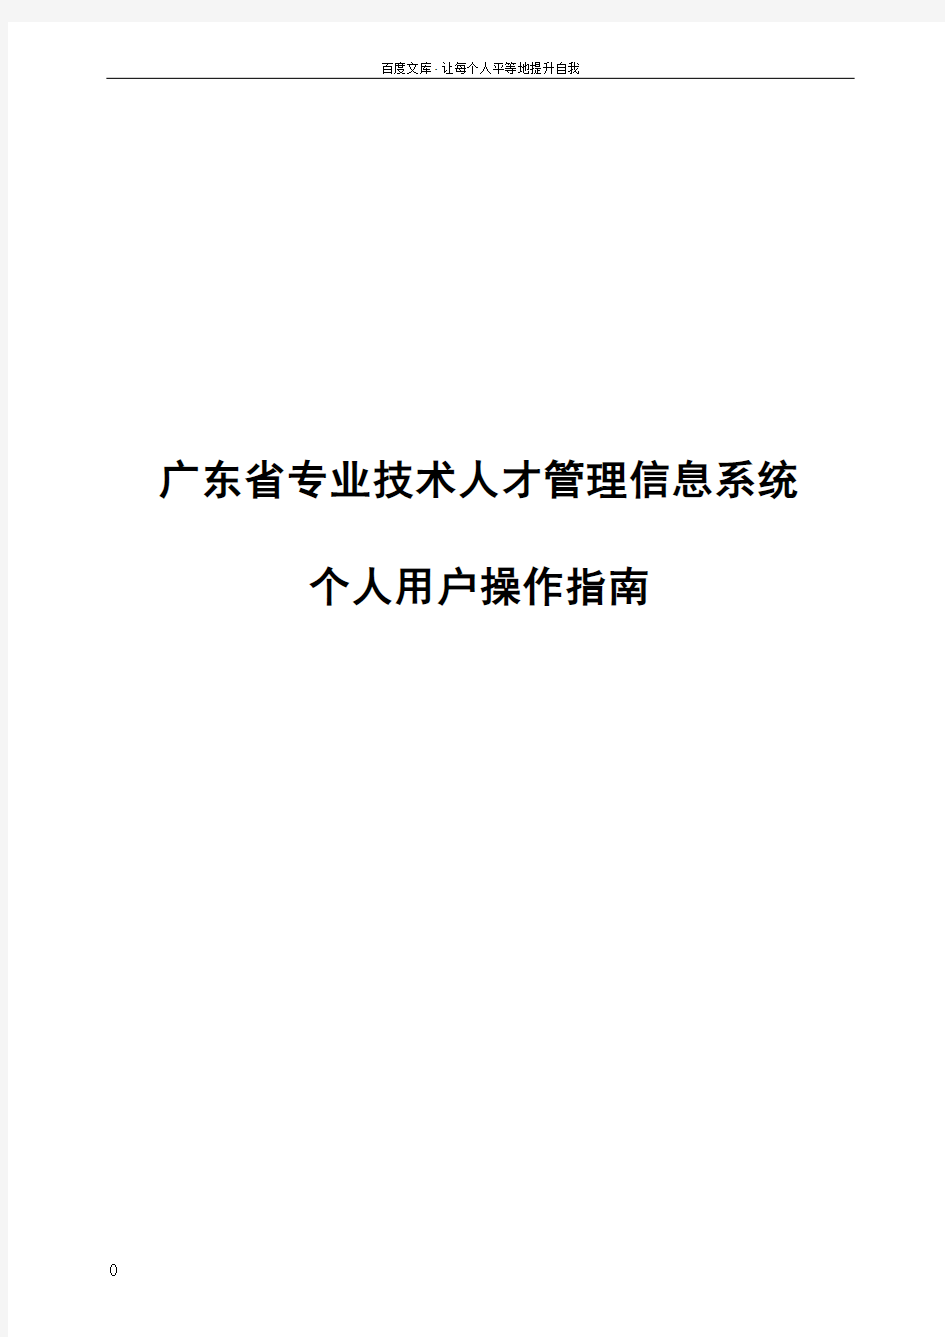 广东省技术人才网上申报系统操作手册个人